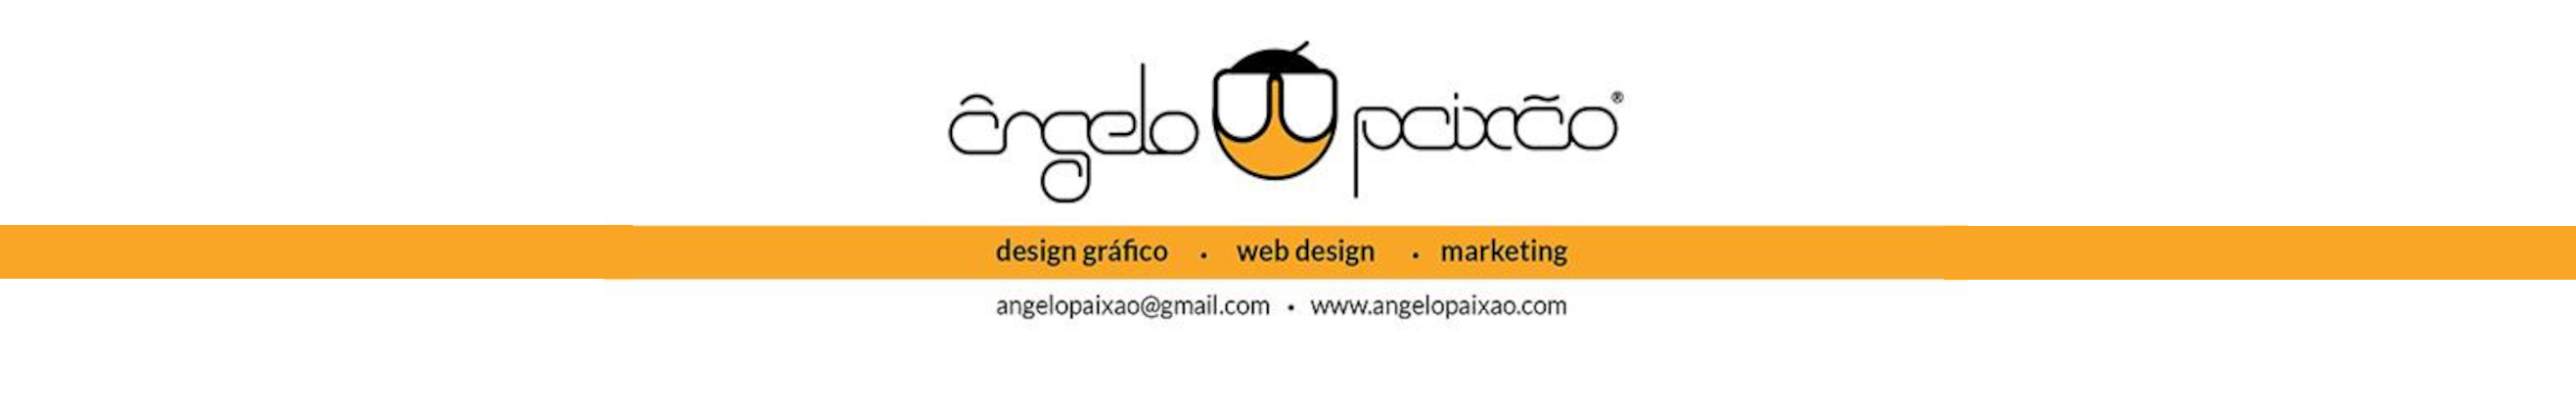 Ângelo Paixão's profile banner